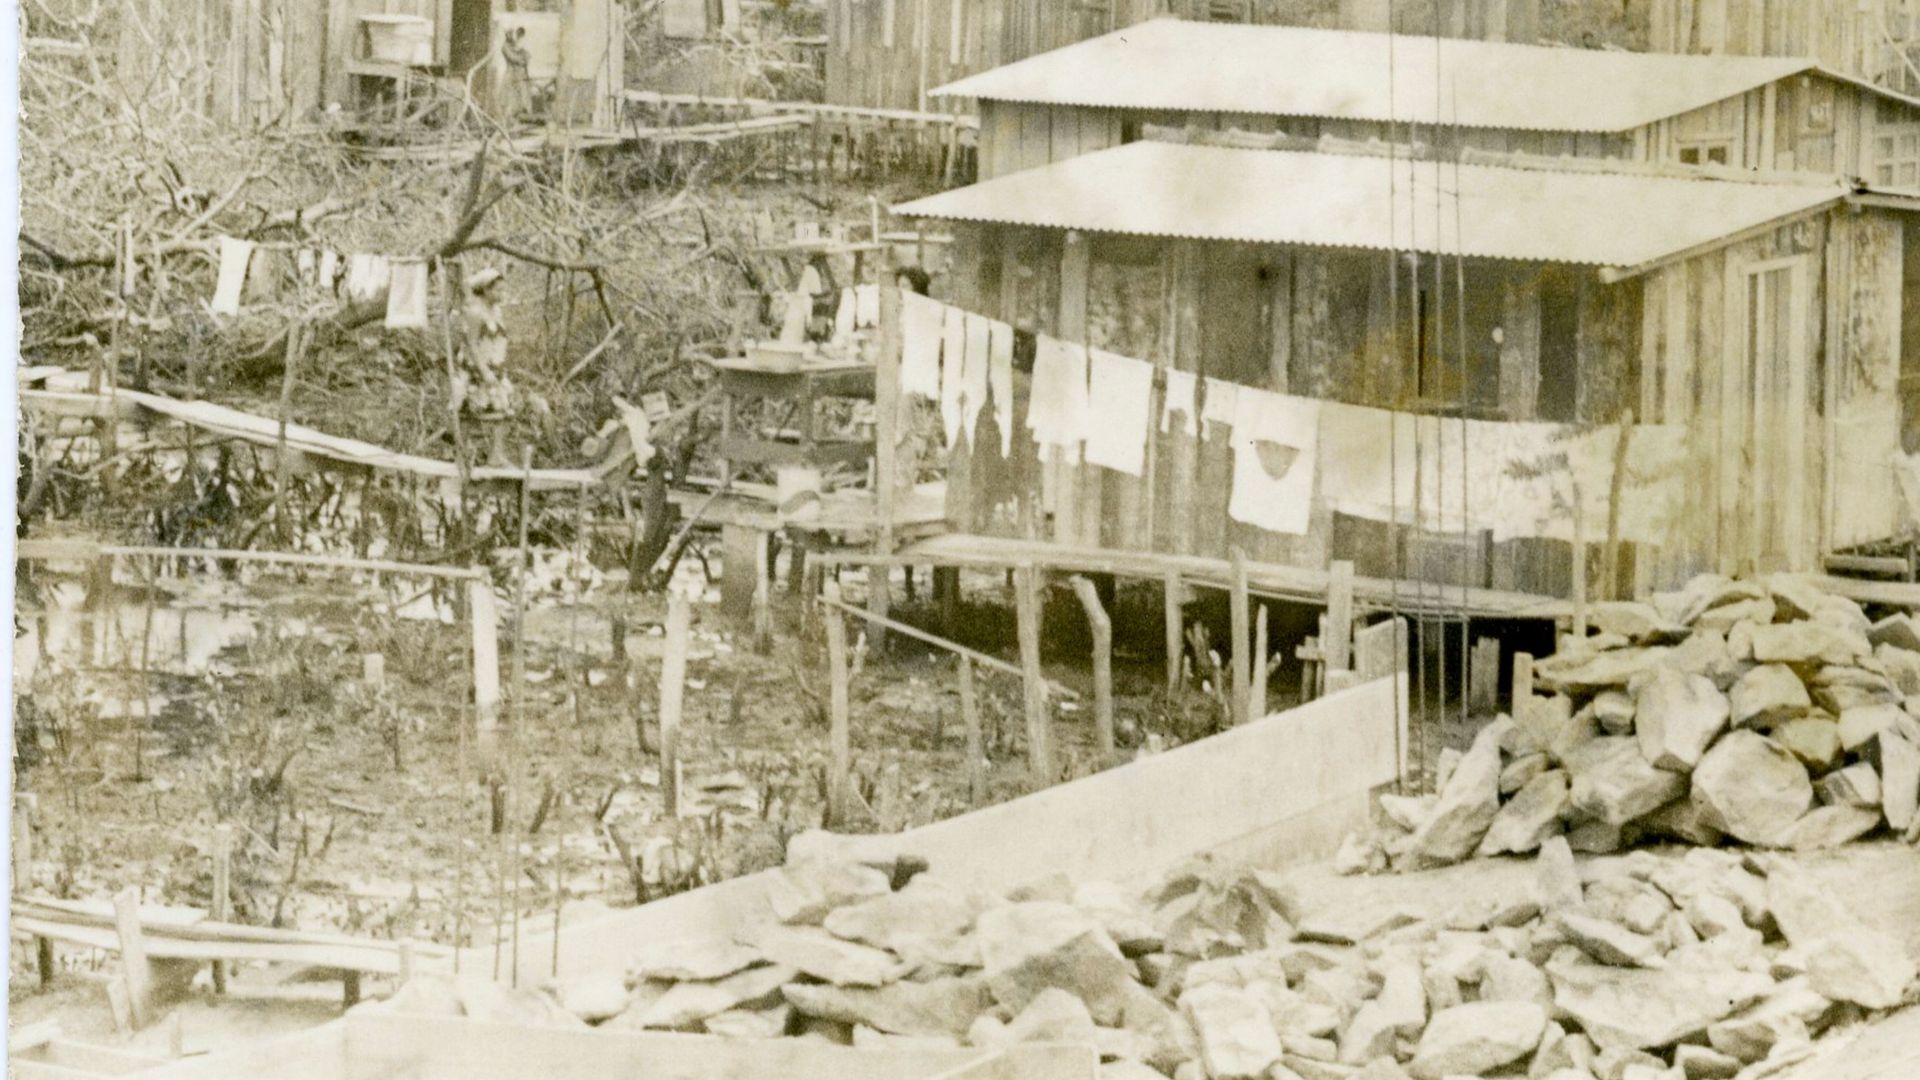 Barracos erguidos sobre palafitas no bairro São Pedro, em 1981